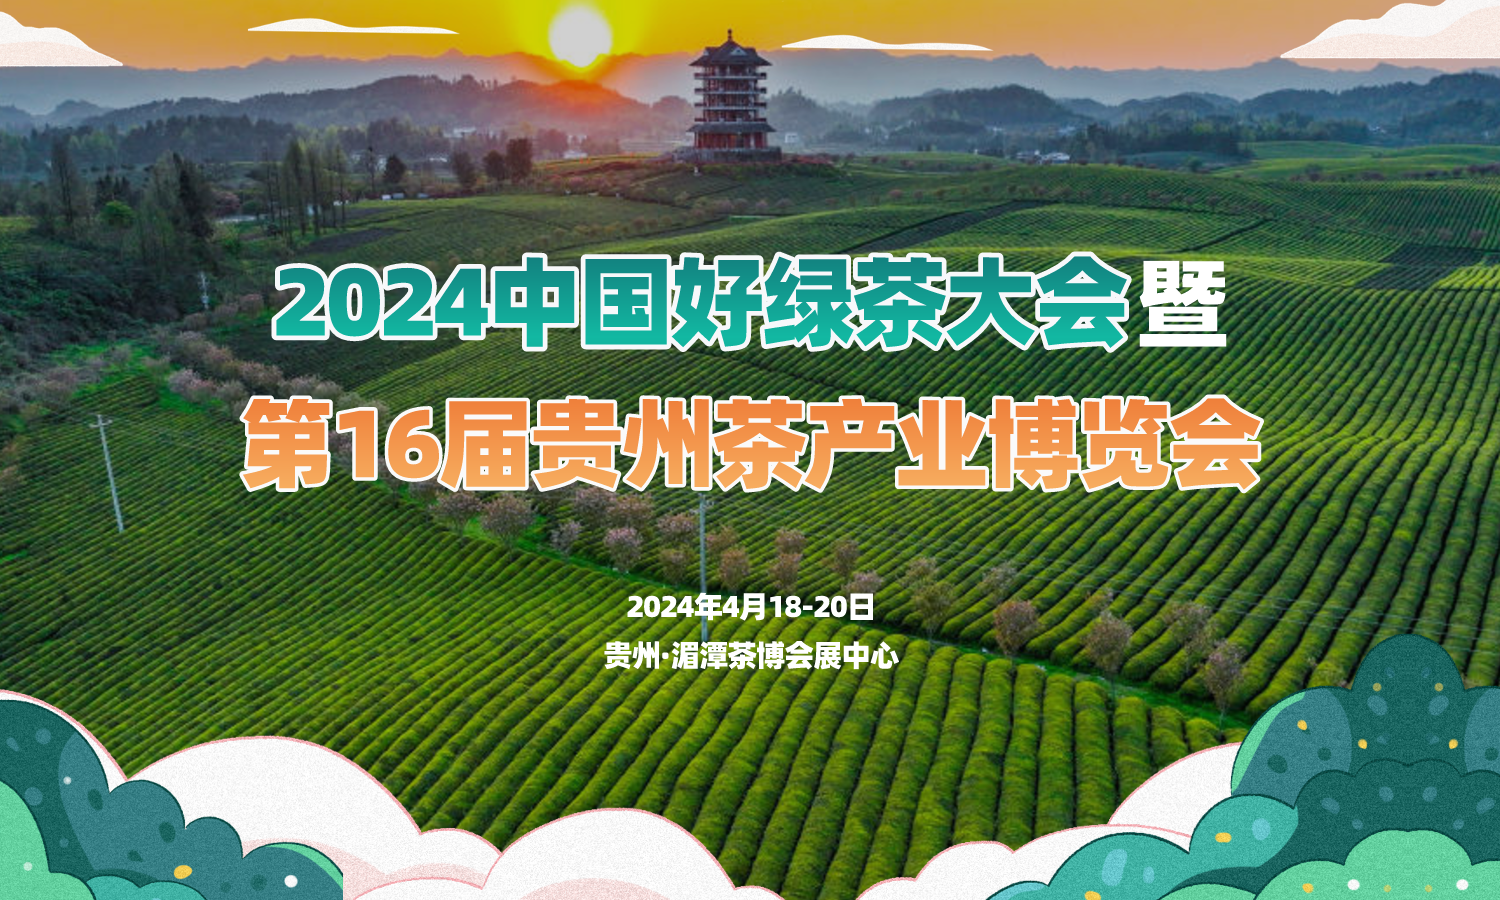 关于邀请参加2024中国好绿茶大会暨第16届贵州茶产业博览会的函